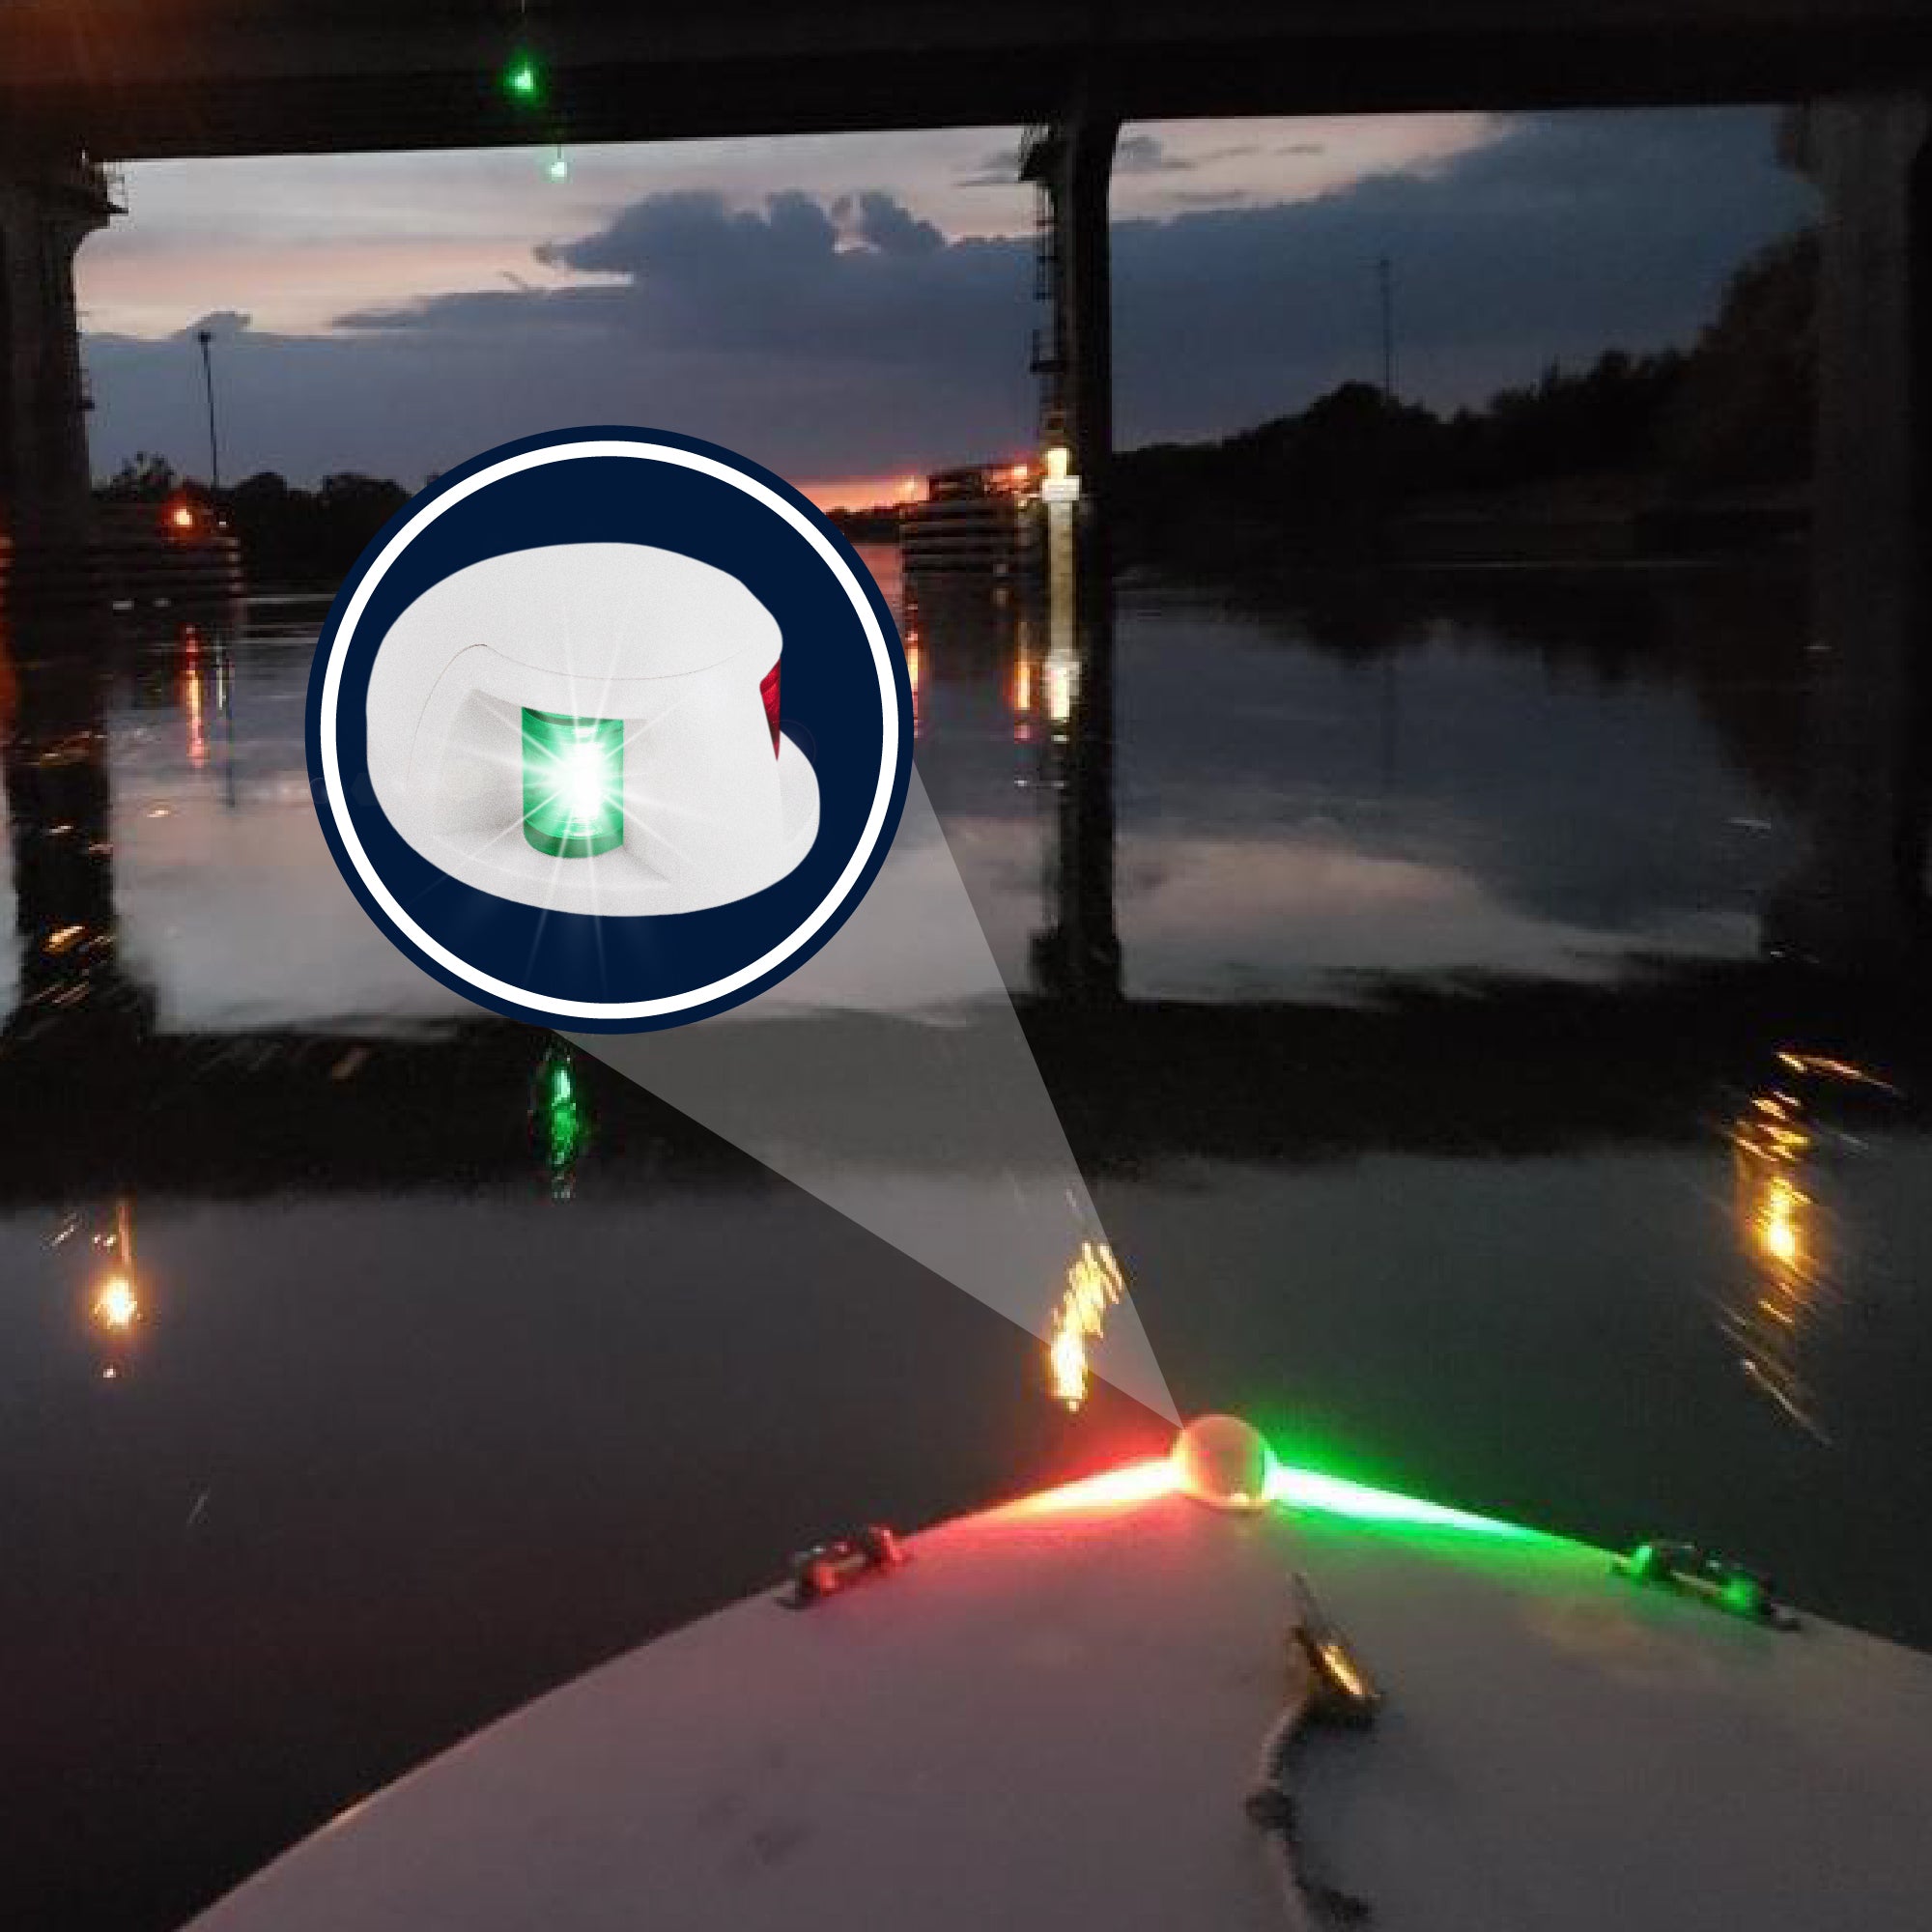 LED Anchor Light and Boat Navigation Lights Set - FO4126-C2